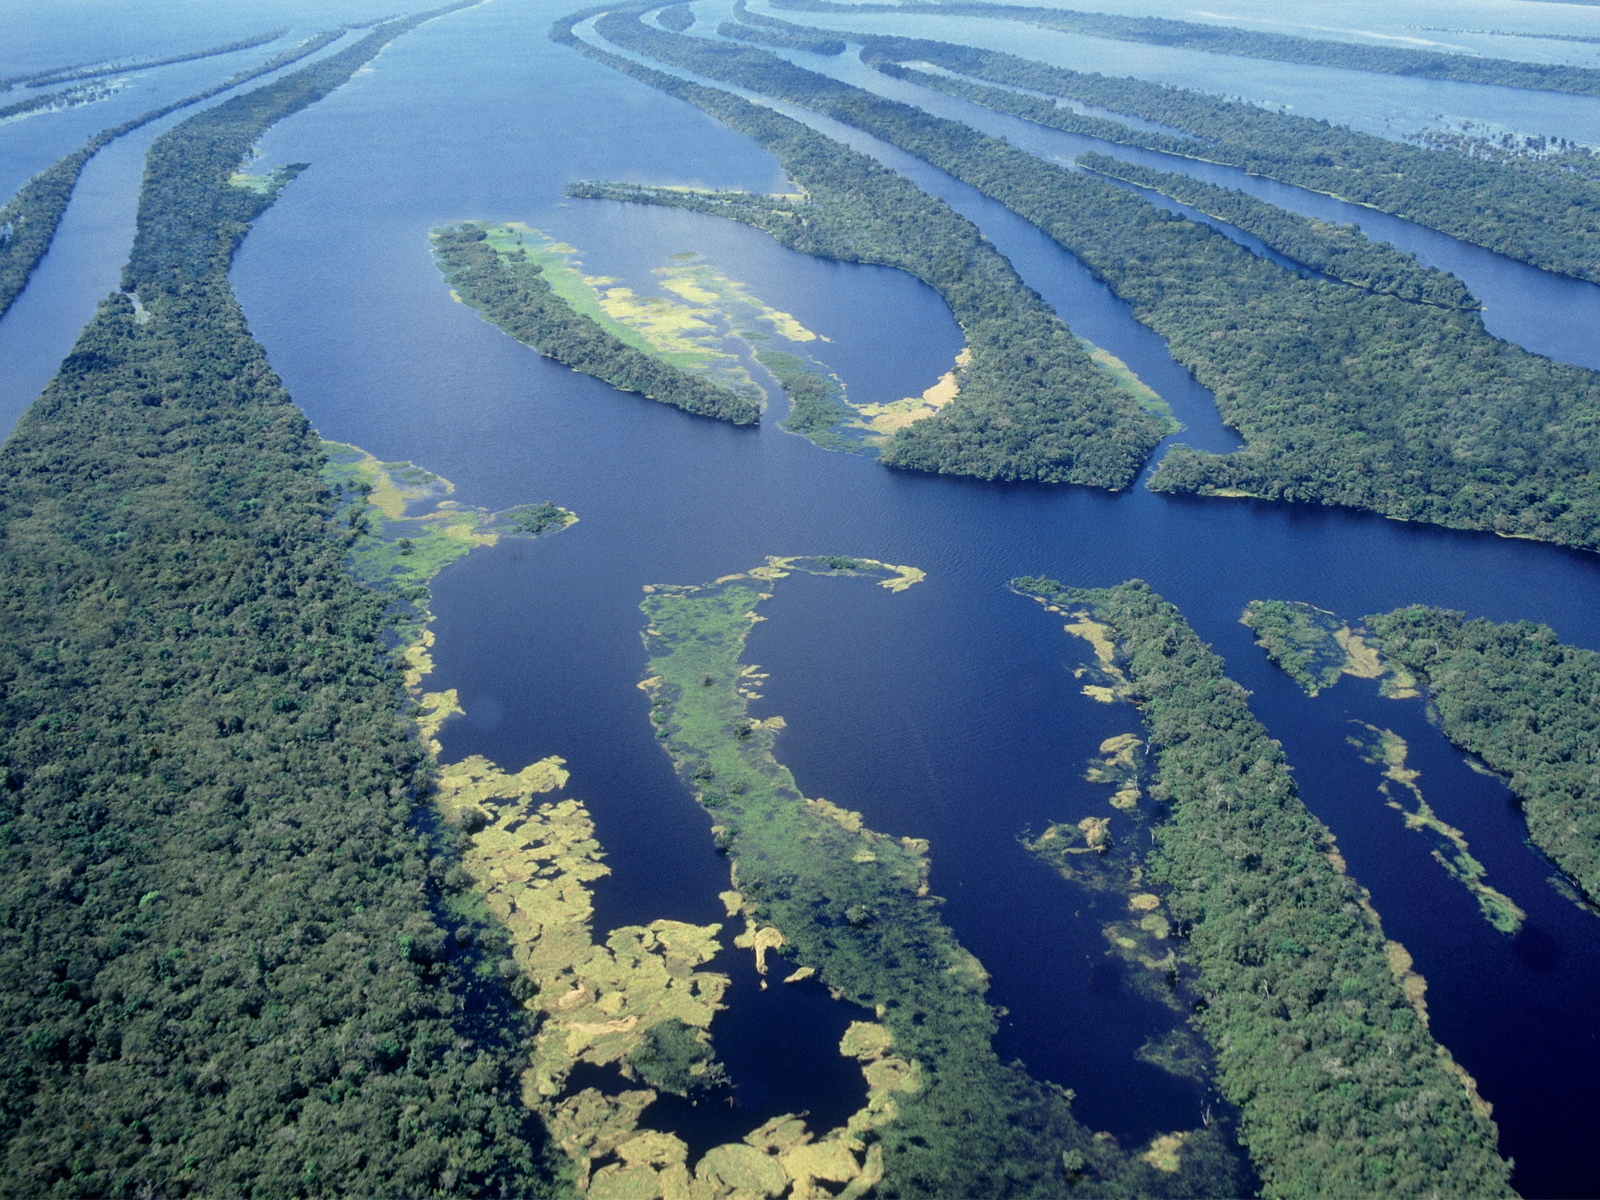 Quatrocentos anos de evangelização na Amazônia